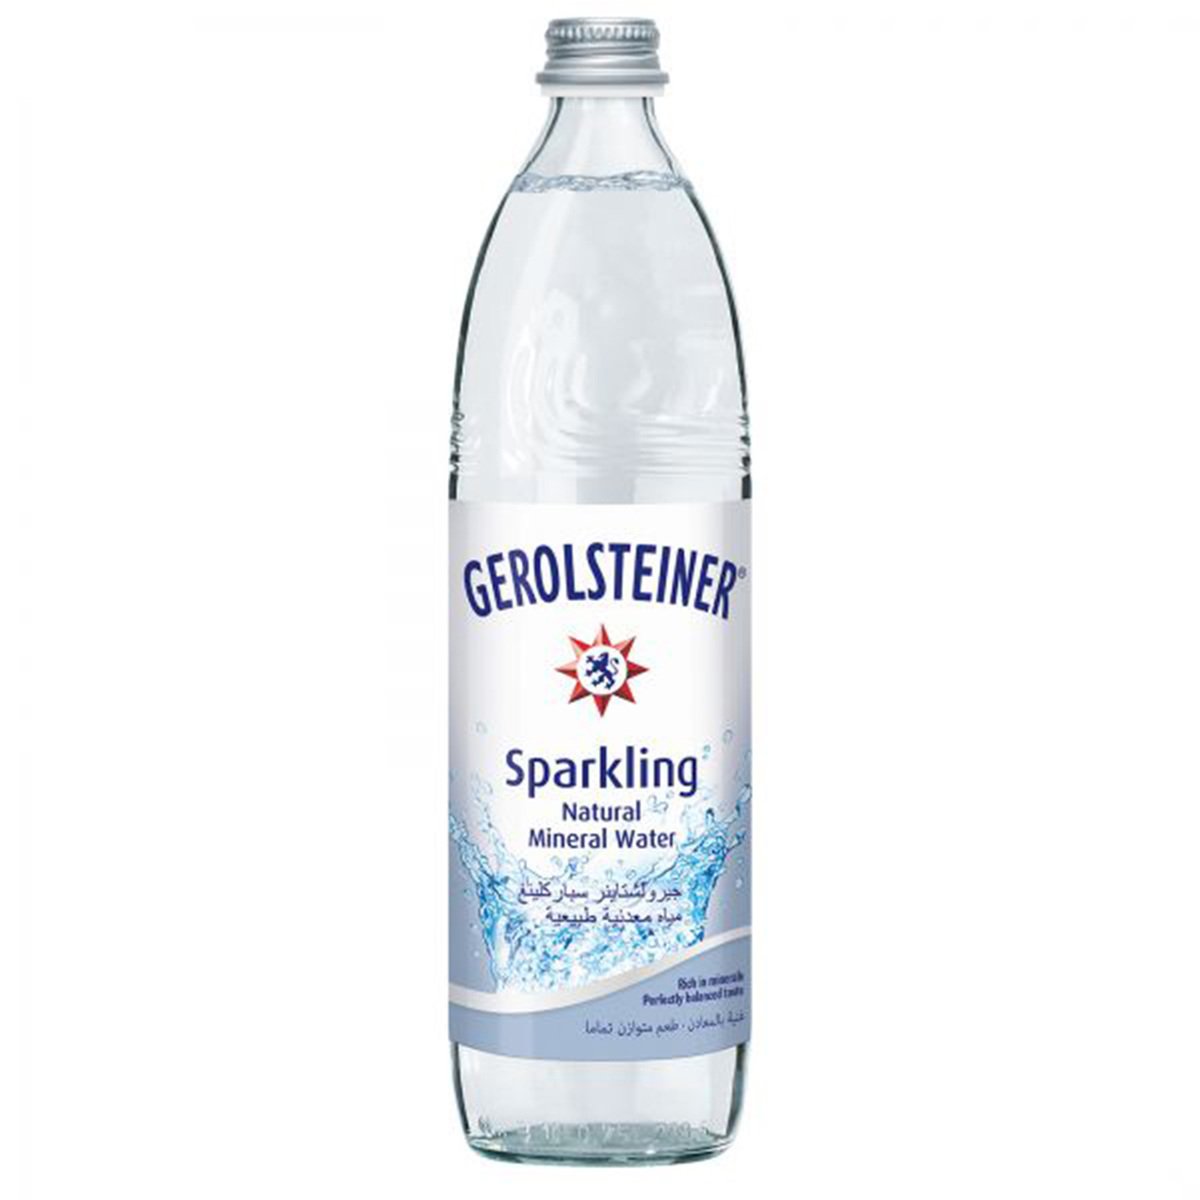 Gerolsteiner Sparkling Natural Mineral Water 750 ml